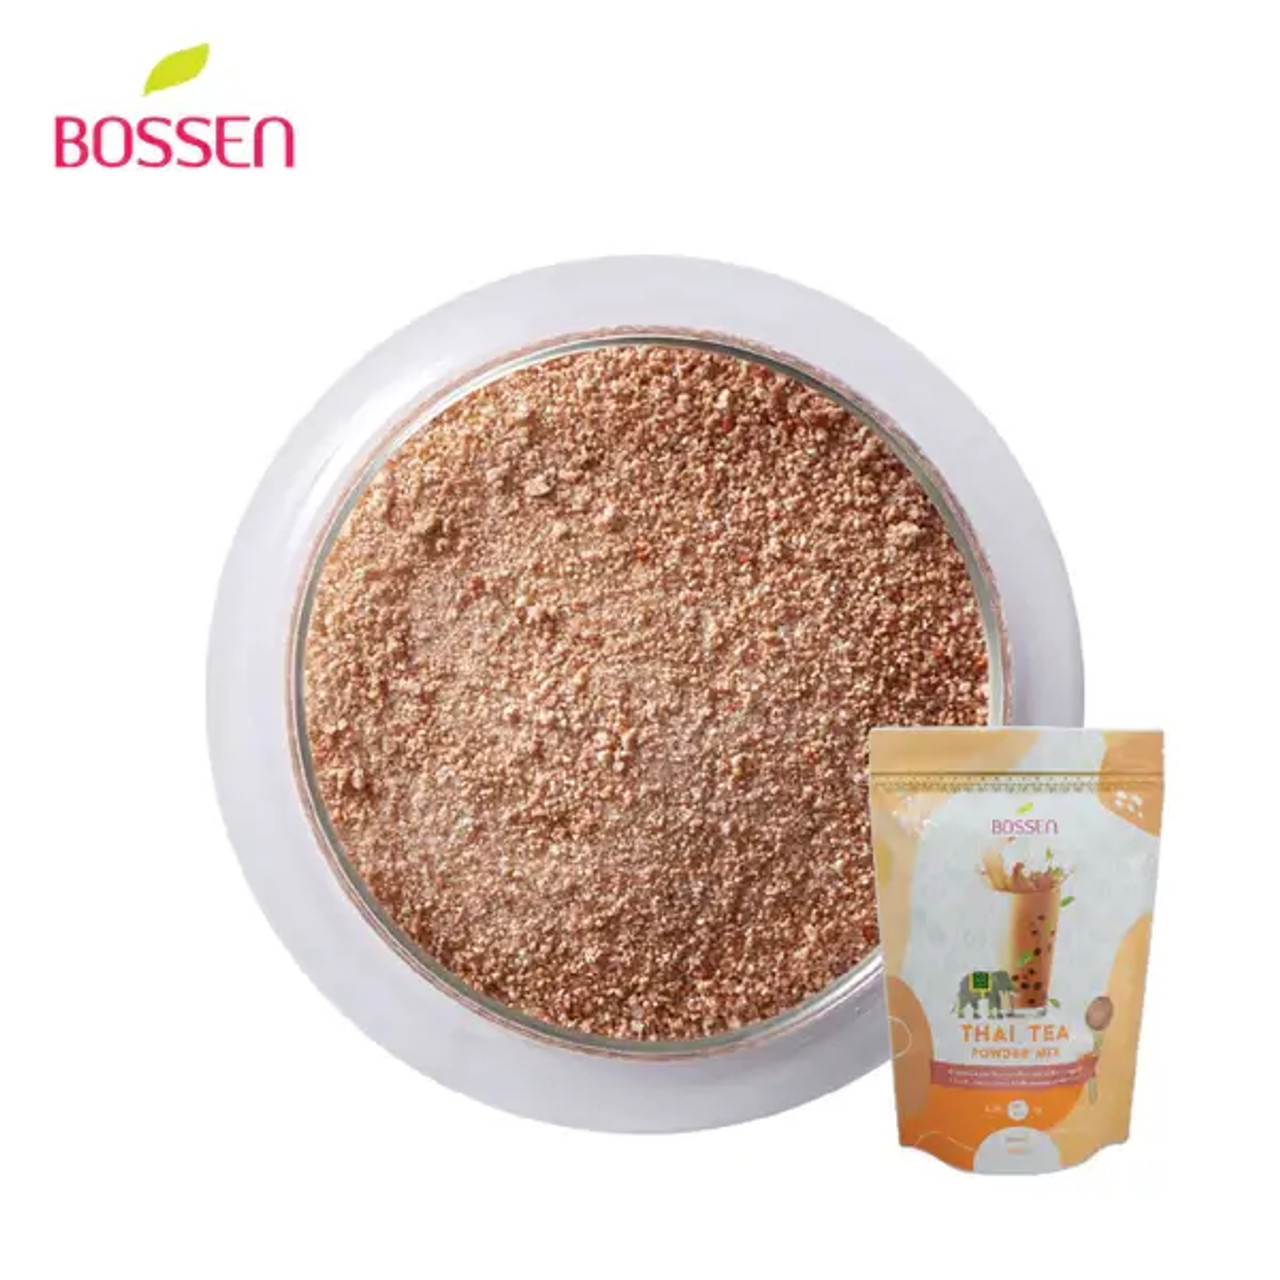 Bossen 1 kg (2.2 lb.) Thai Tea Powder Mix - Bubble Tea Bliss(10/Case)-Chicken Pieces